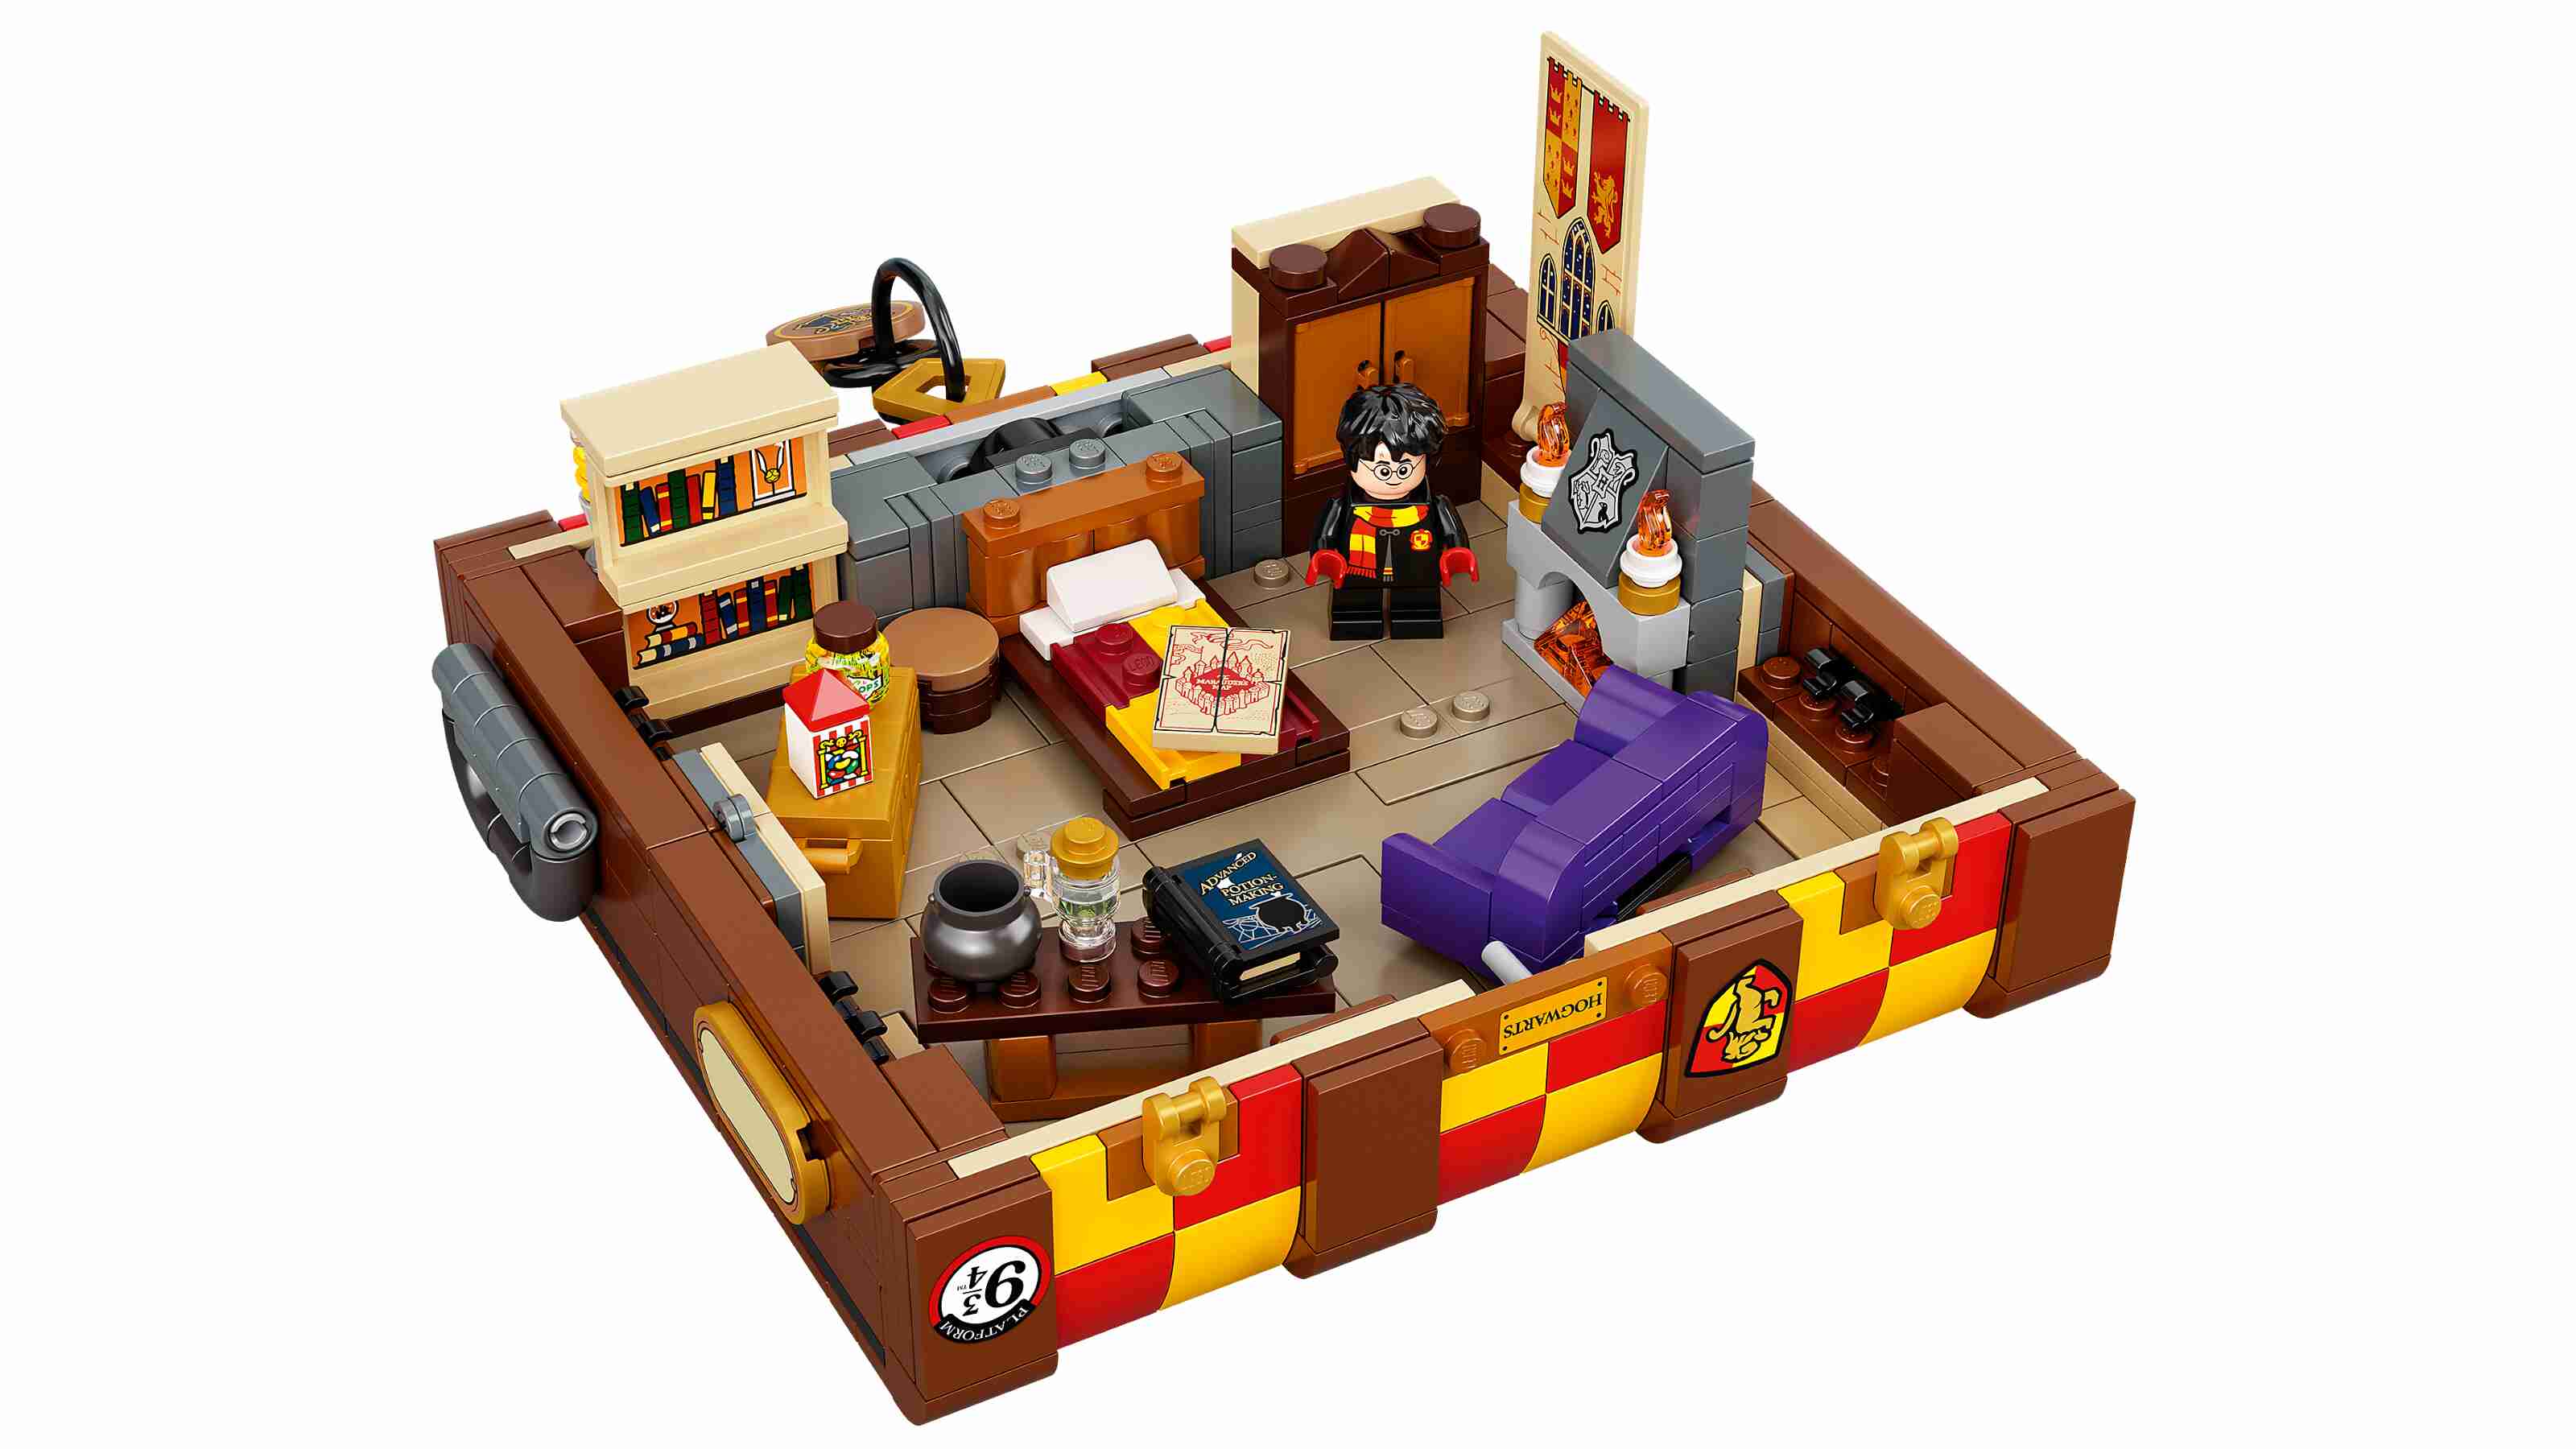 LEGO 76399 Harry Potter Hogwarts Zauberkoffer, viele Minifigur-Teile und Zubehör